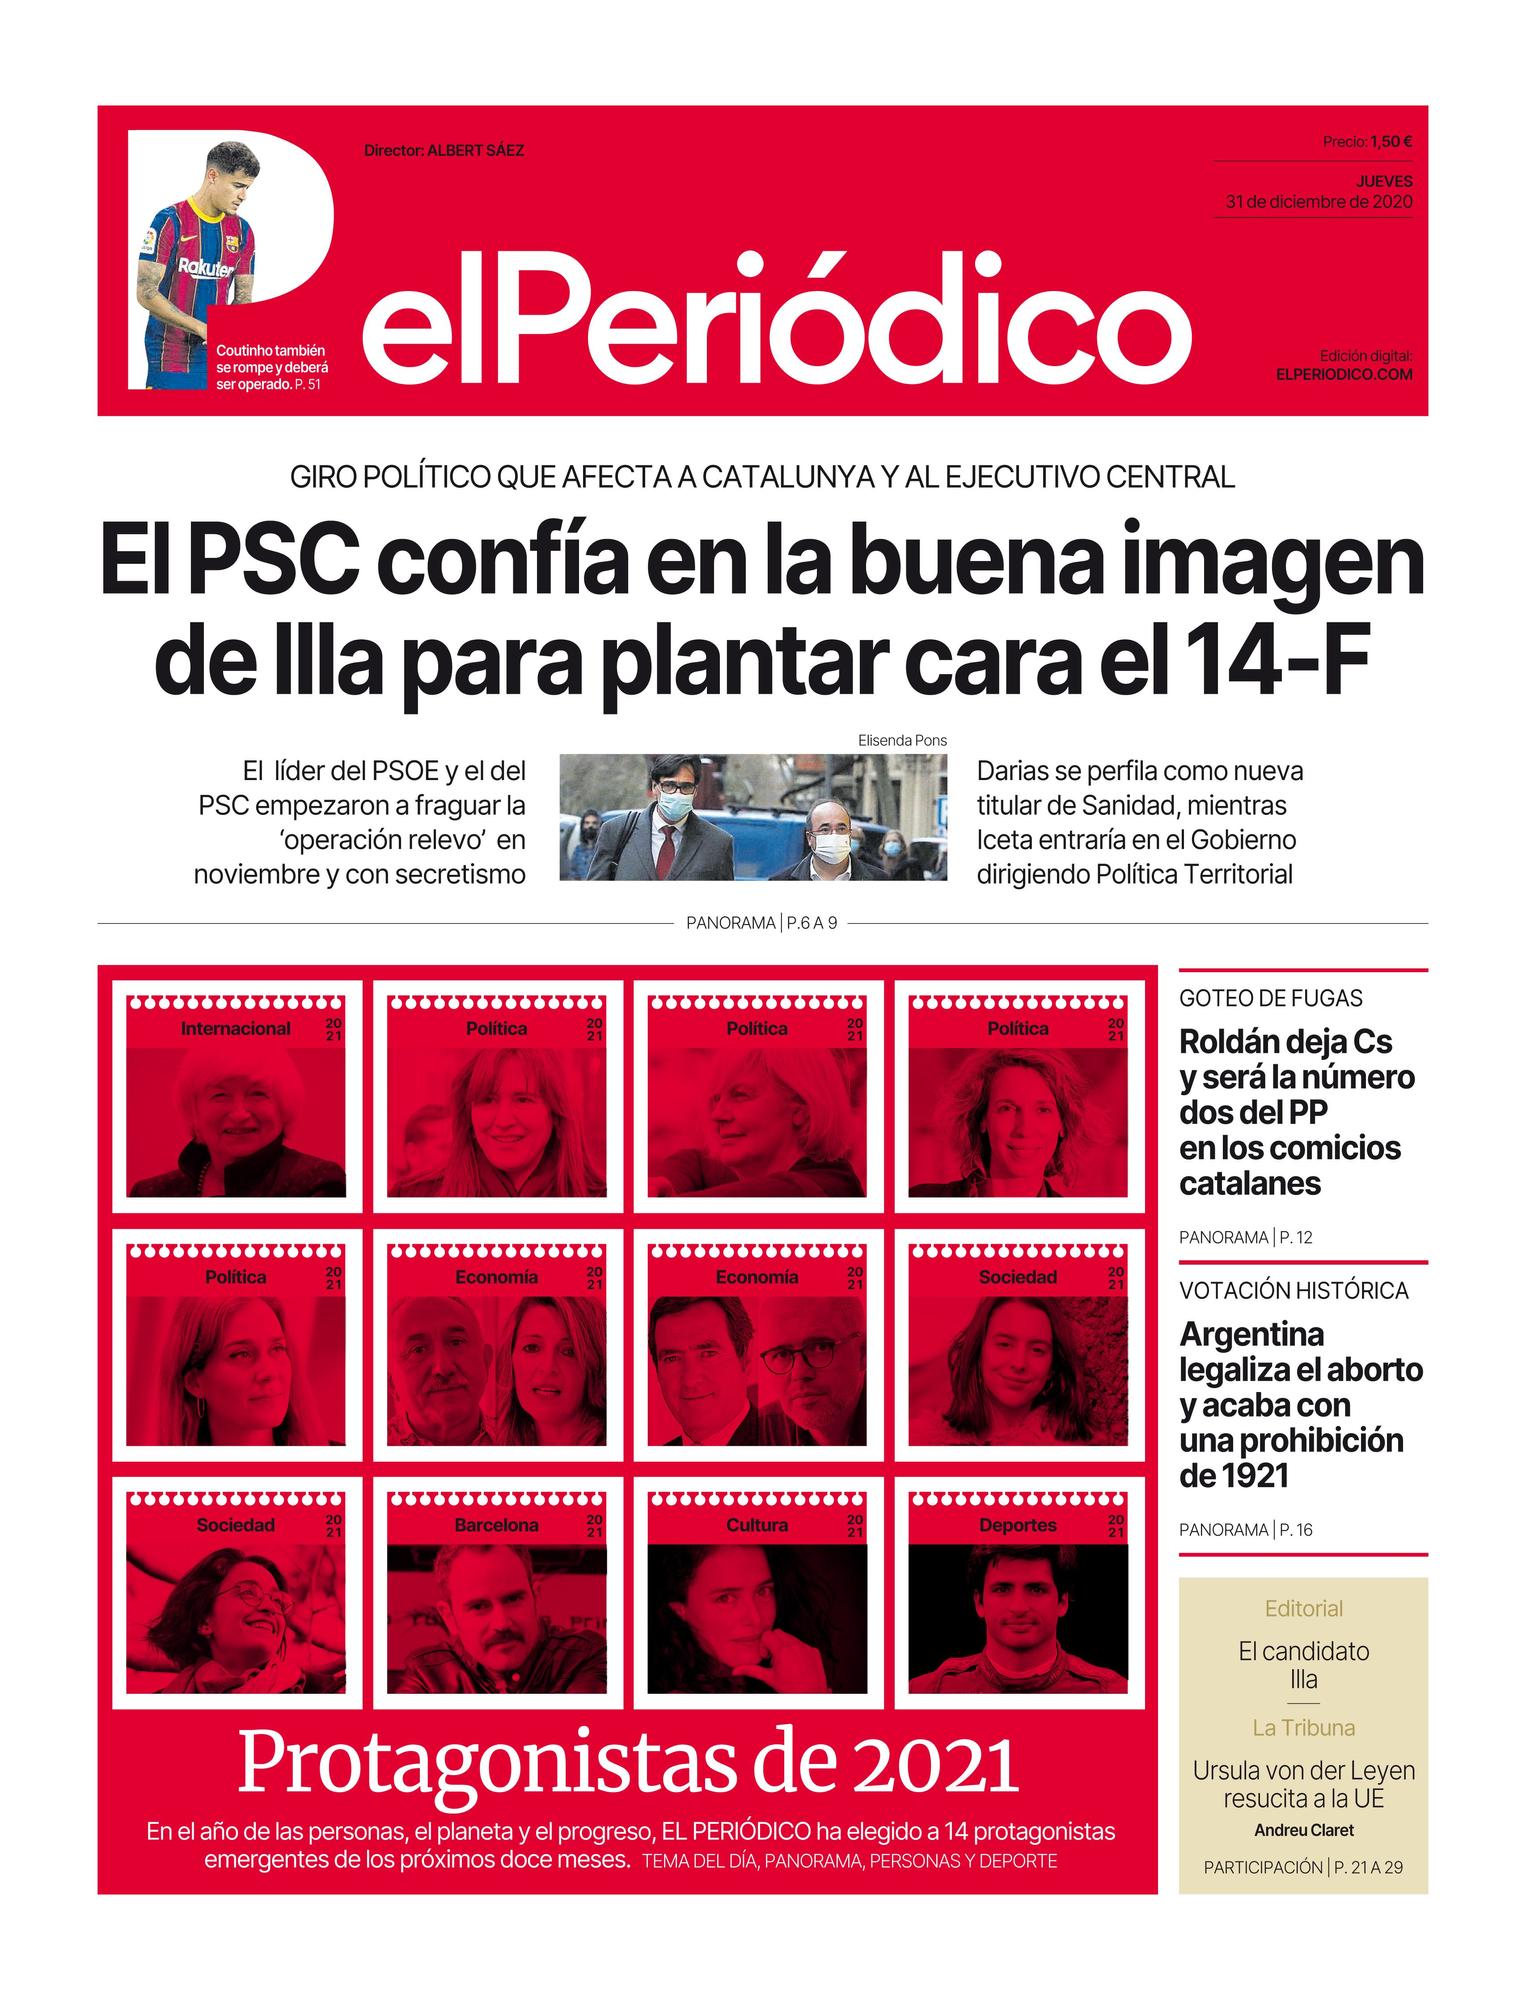 La portada de EL PERIÓDICO del 31 de diciembre del 2020 y 1 de enero del 2021.